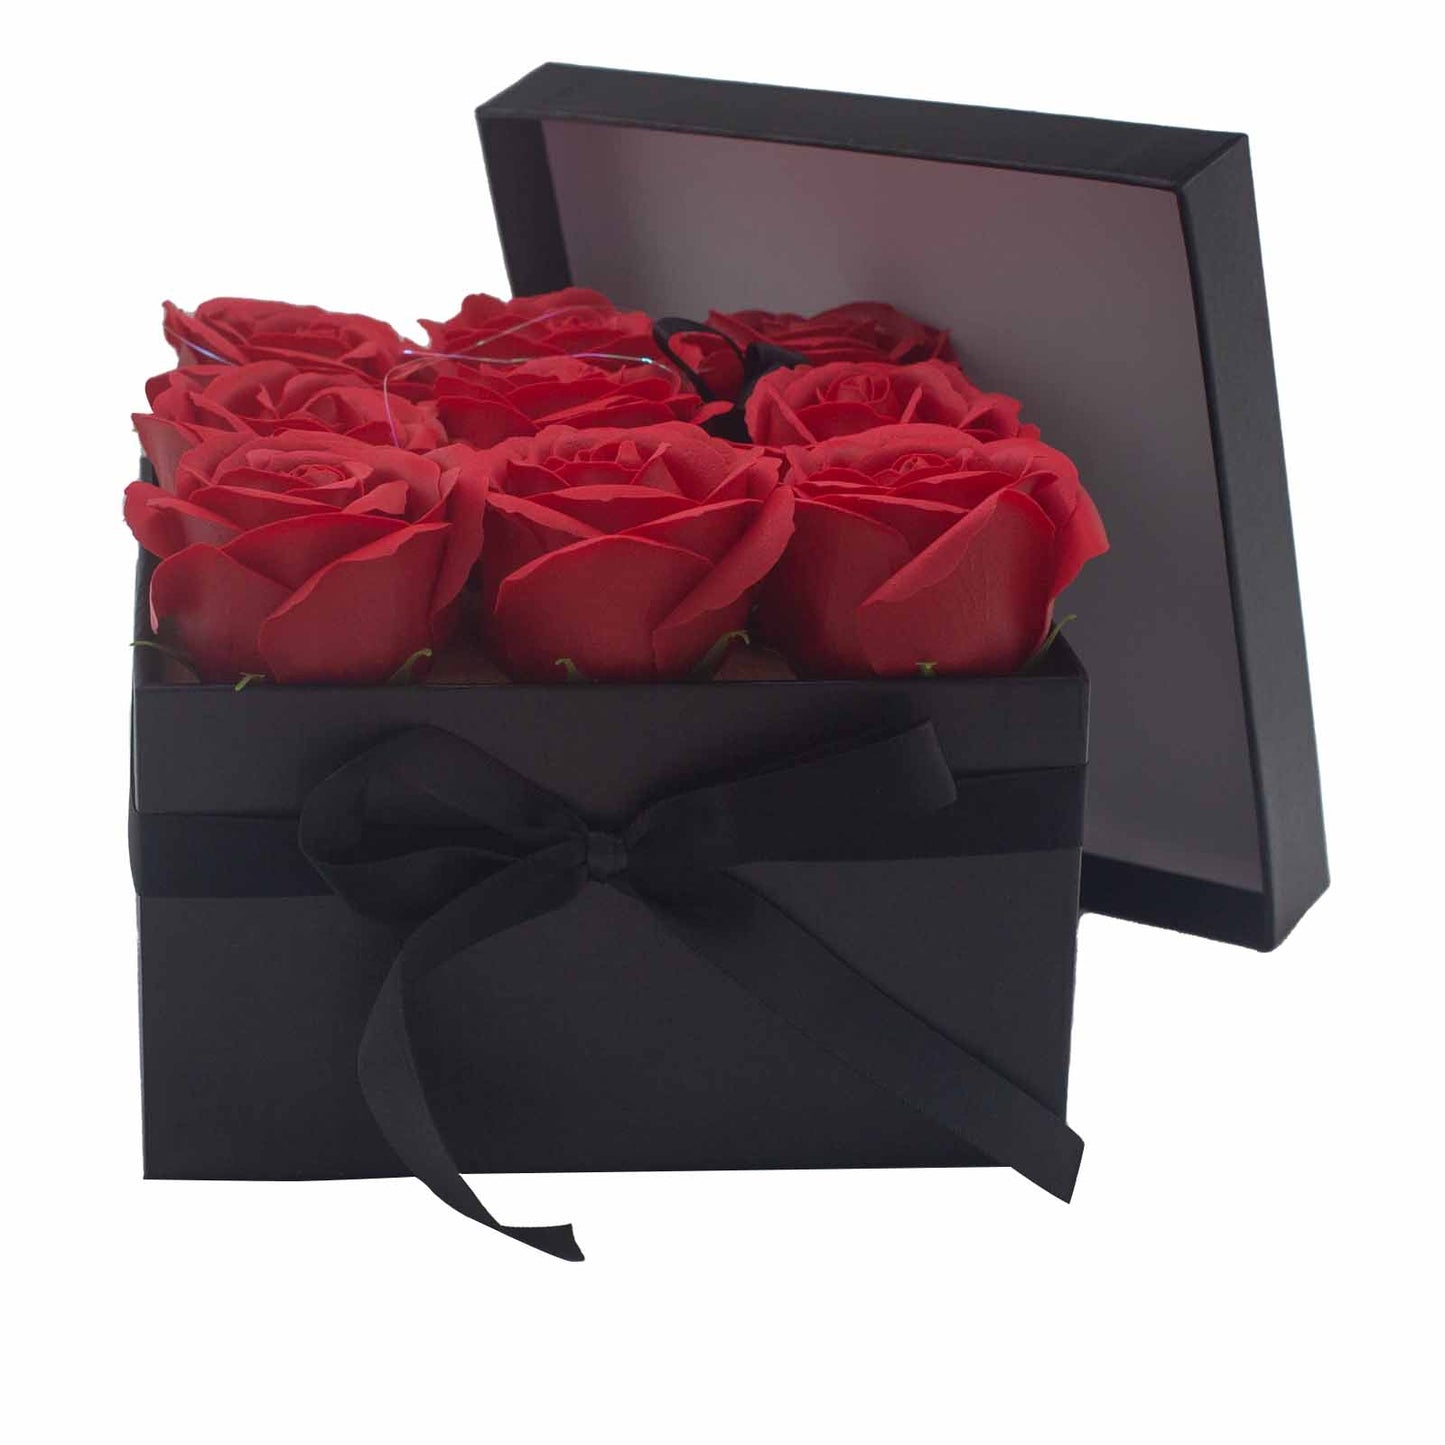 Zeepbloem Geschenkboeket - 9 roze of rode rozen - Vierkant